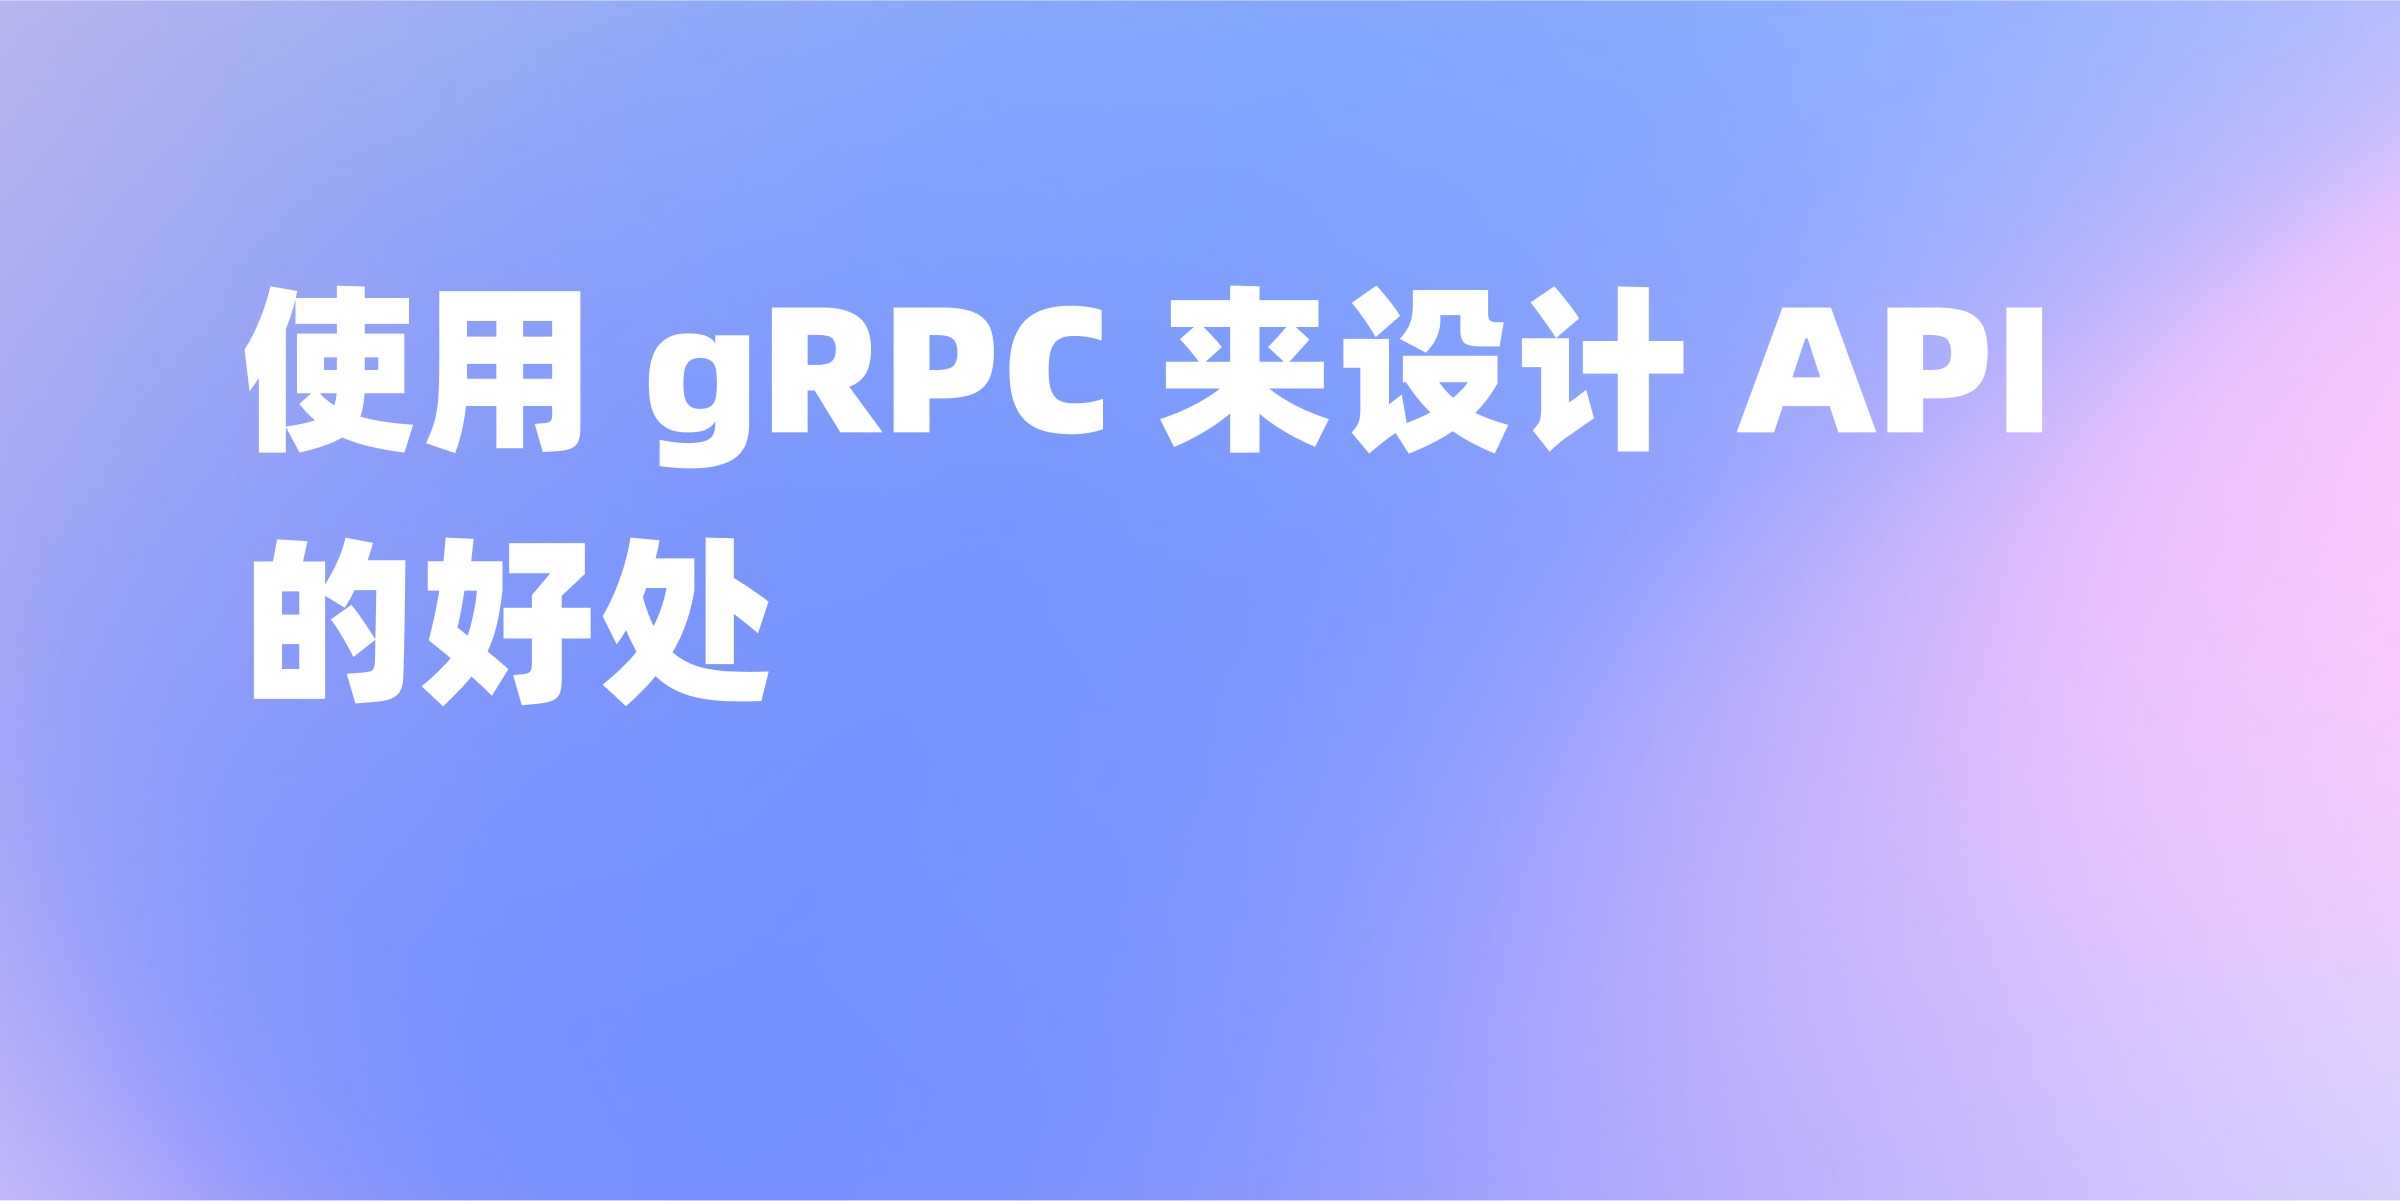 gRPC API详解：从实现原理到使用实例